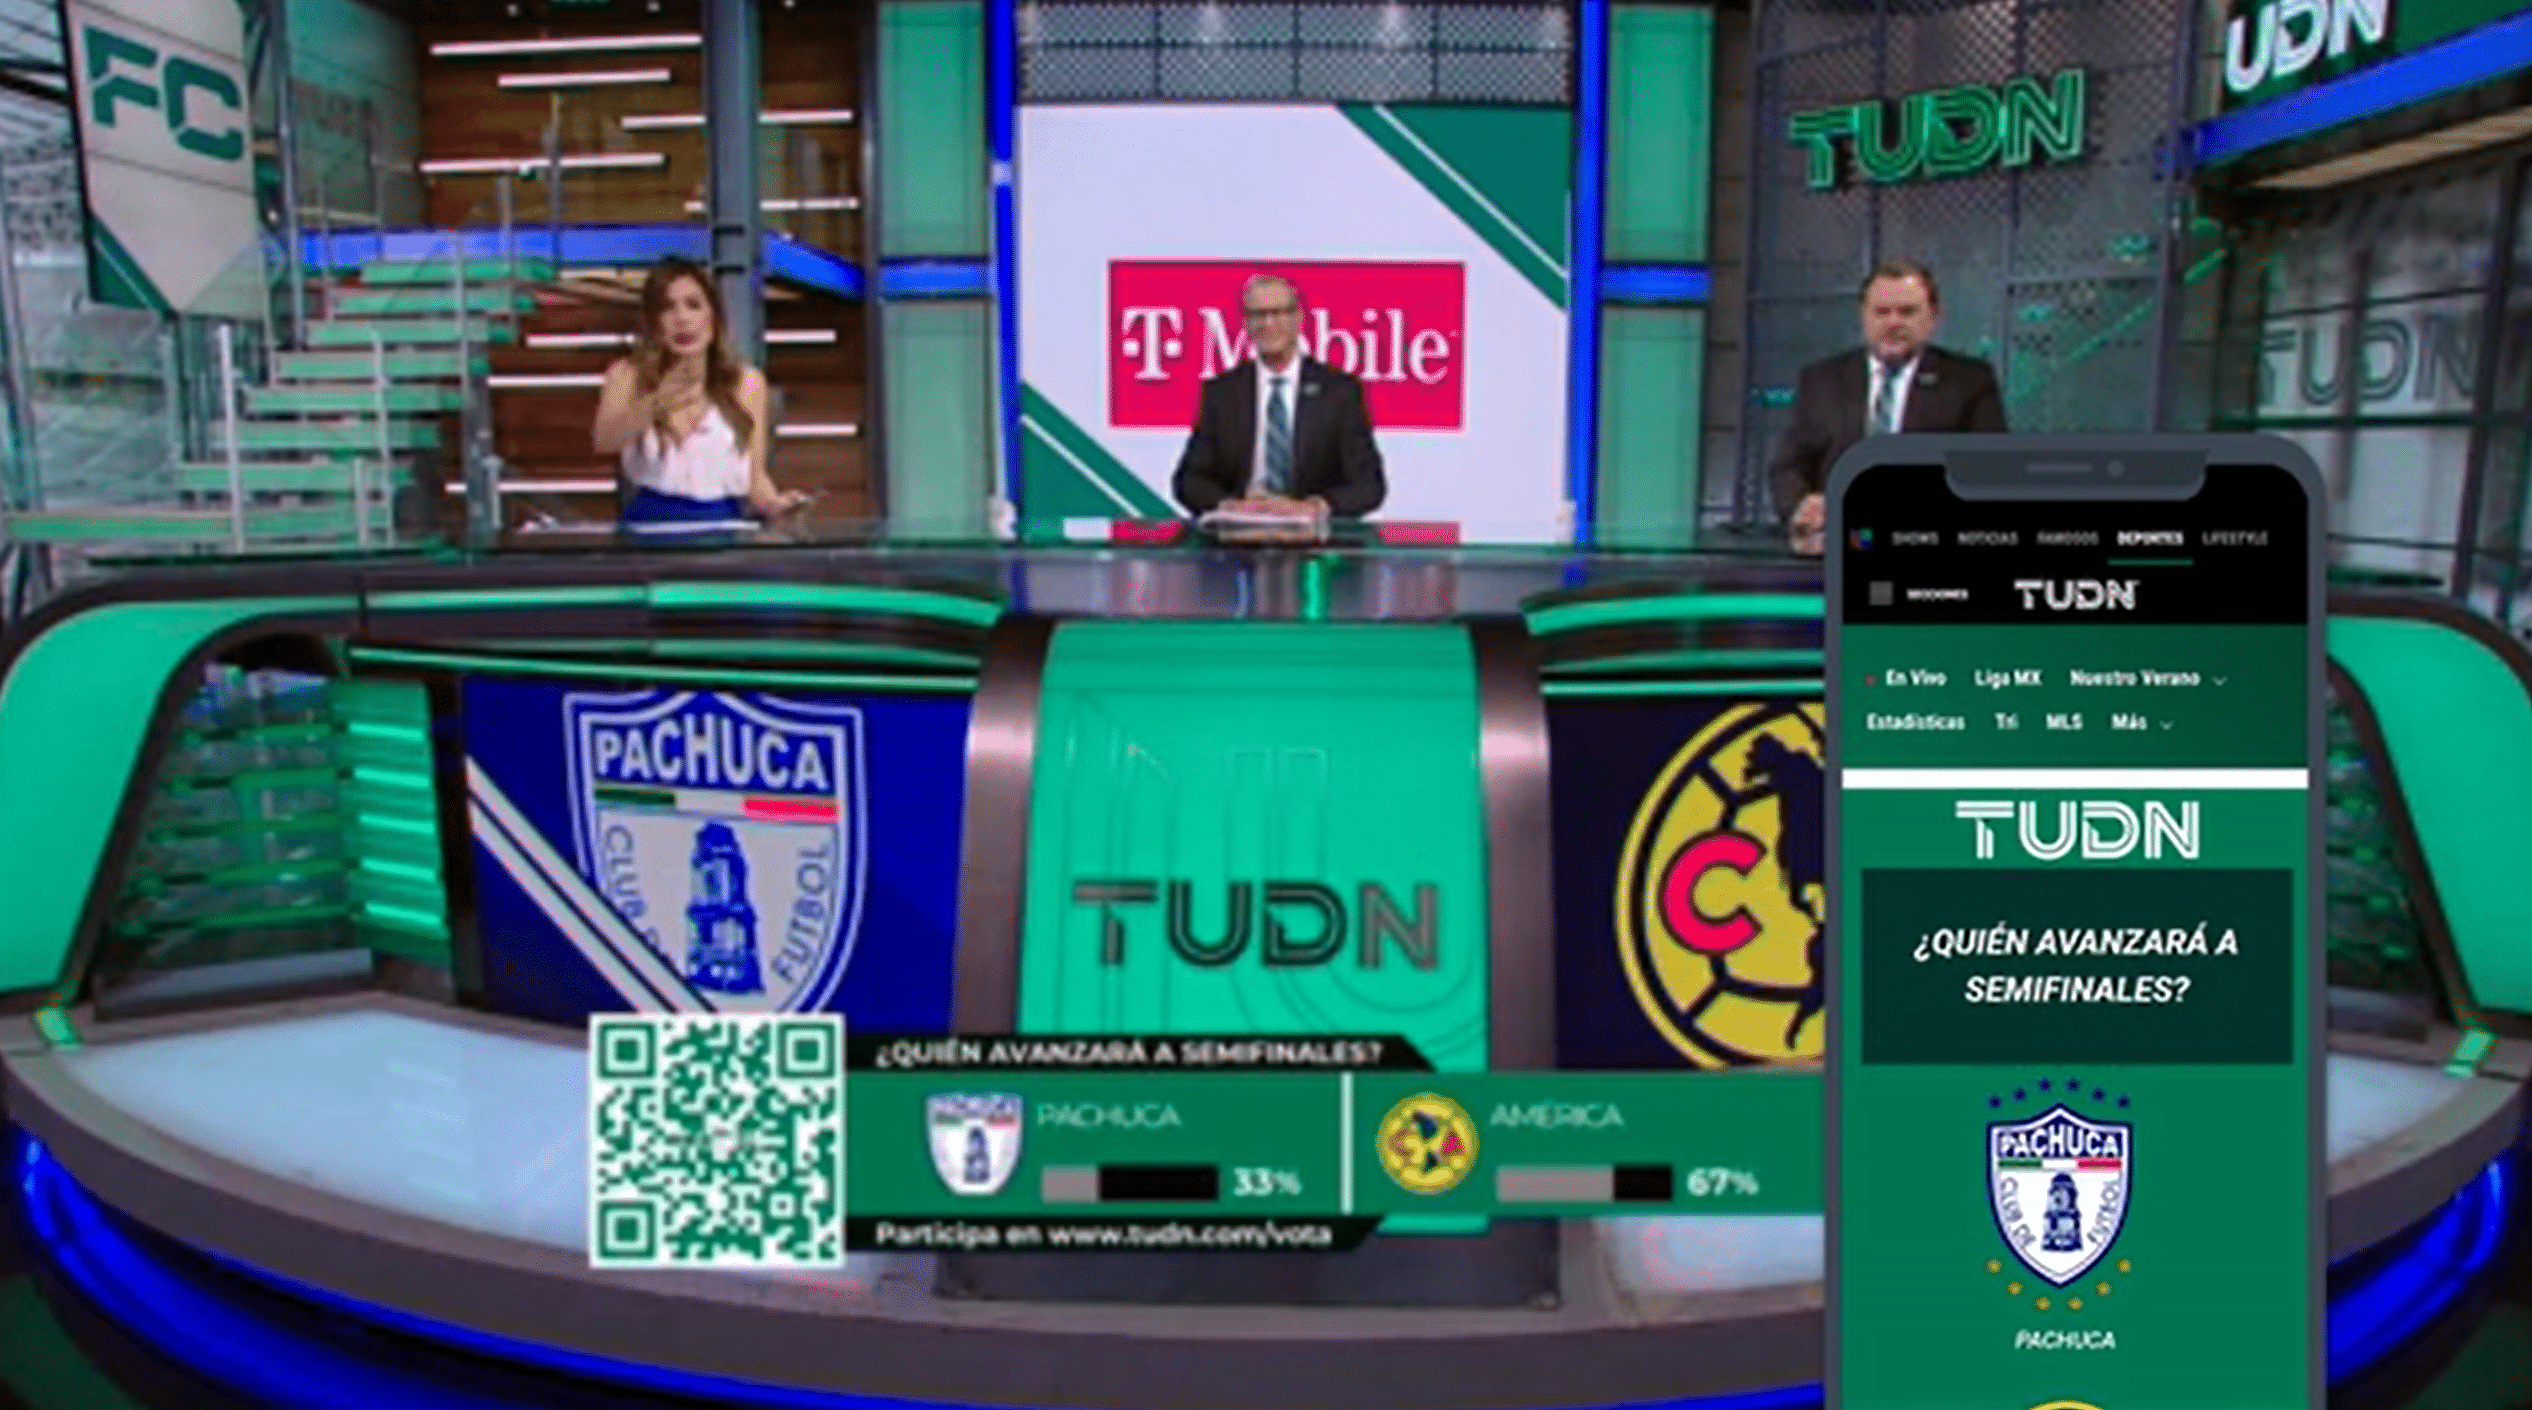 Televisa Univision Deportes Network (TUDN) escolhe Flowics para criar uma  programação mais interativa